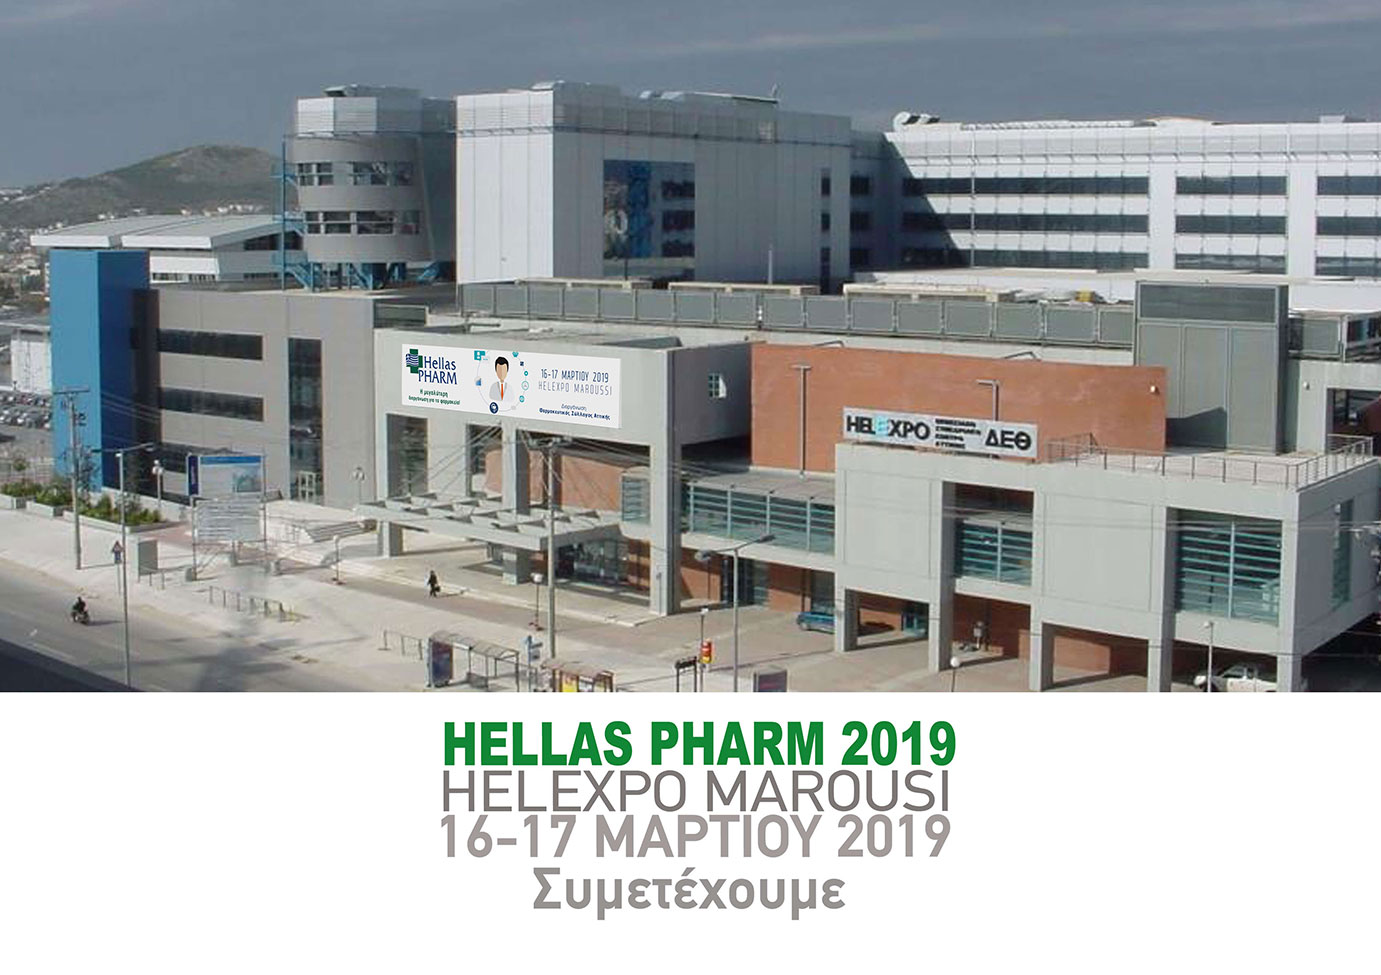 Hellaspharm-2019.jpg